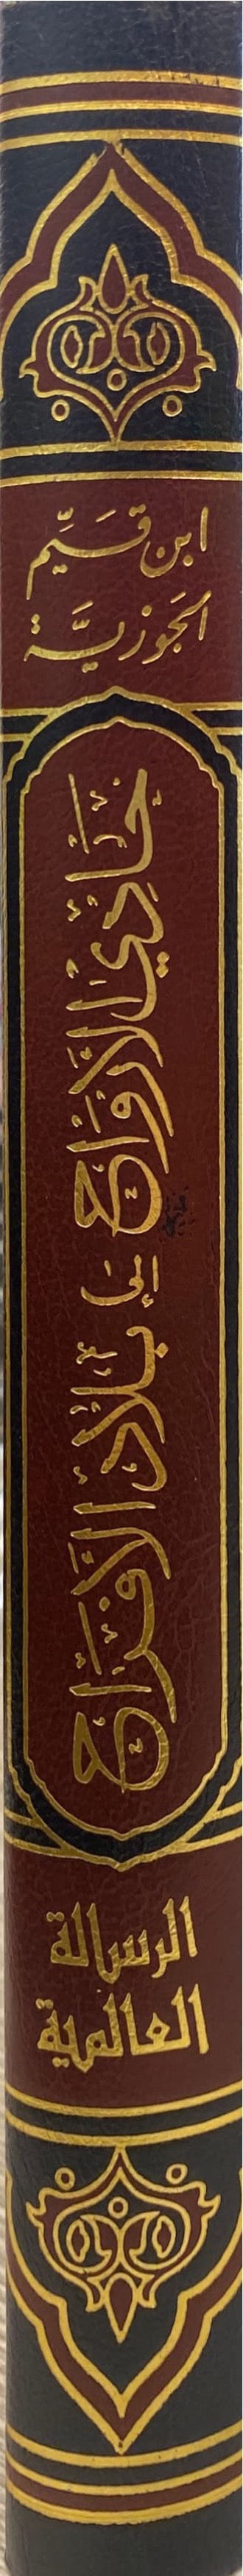 حادي الارواح إلى بلاد الافراح     Haadi Al Arwaah (1 Volume) (Risaalah)